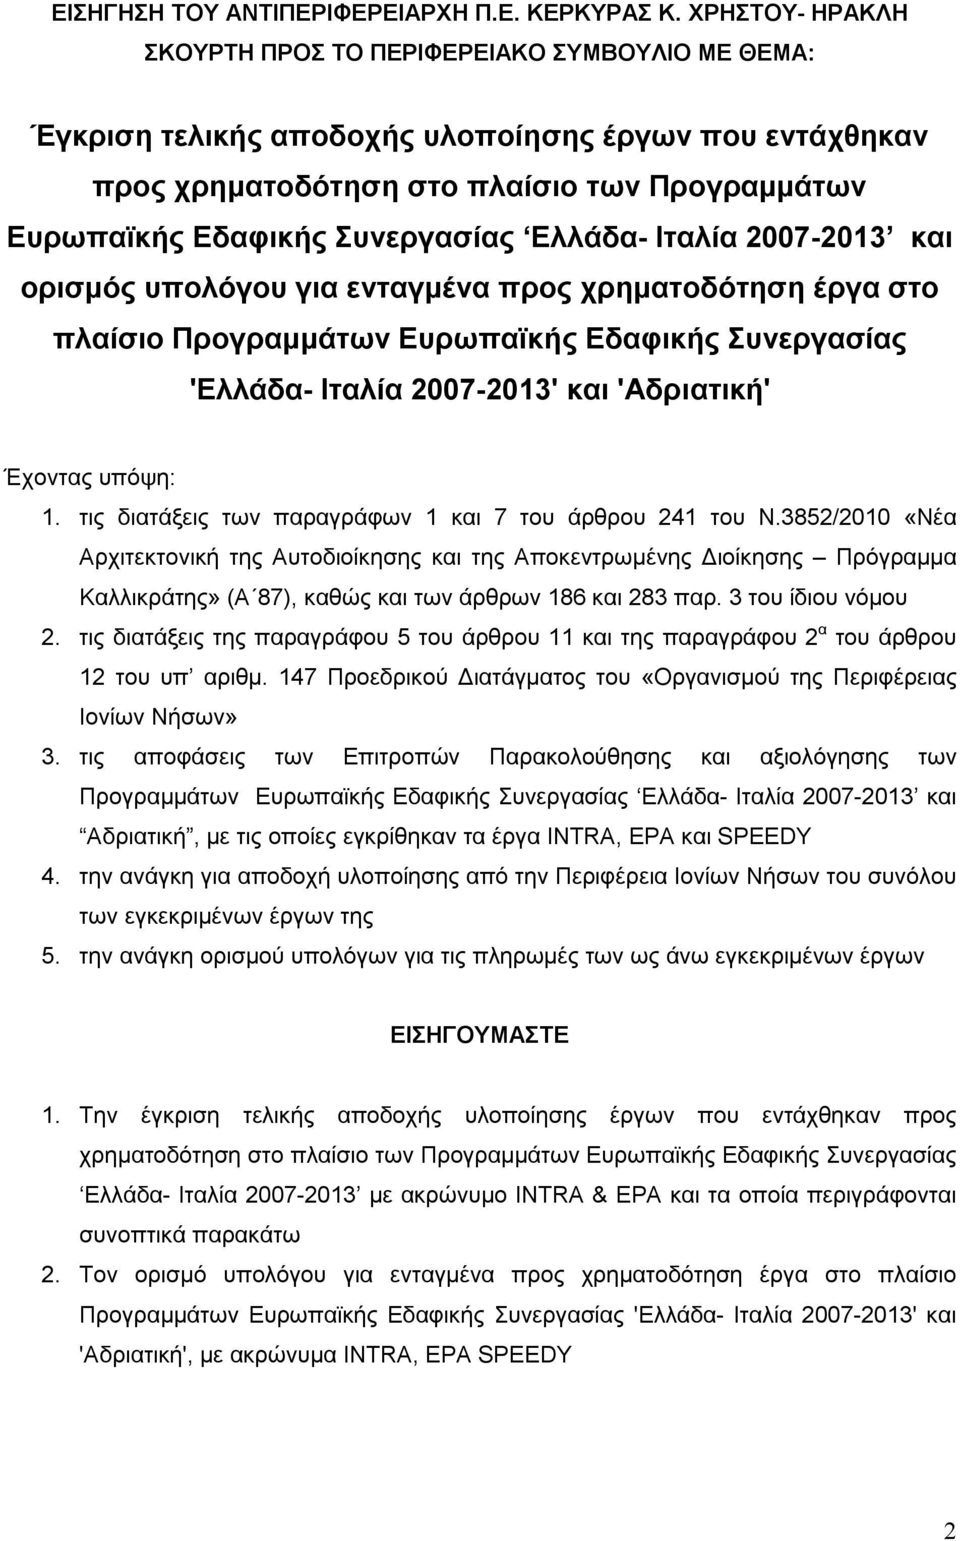 Συνεργασίας Ελλάδα- Ιταλία 2007-2013 και ορισμός υπολόγου για ενταγμένα προς χρηματοδότηση έργα στο πλαίσιο Προγραμμάτων Ευρωπαϊκής Εδαφικής Συνεργασίας 'Ελλάδα- Ιταλία 2007-2013' και 'Αδριατική'